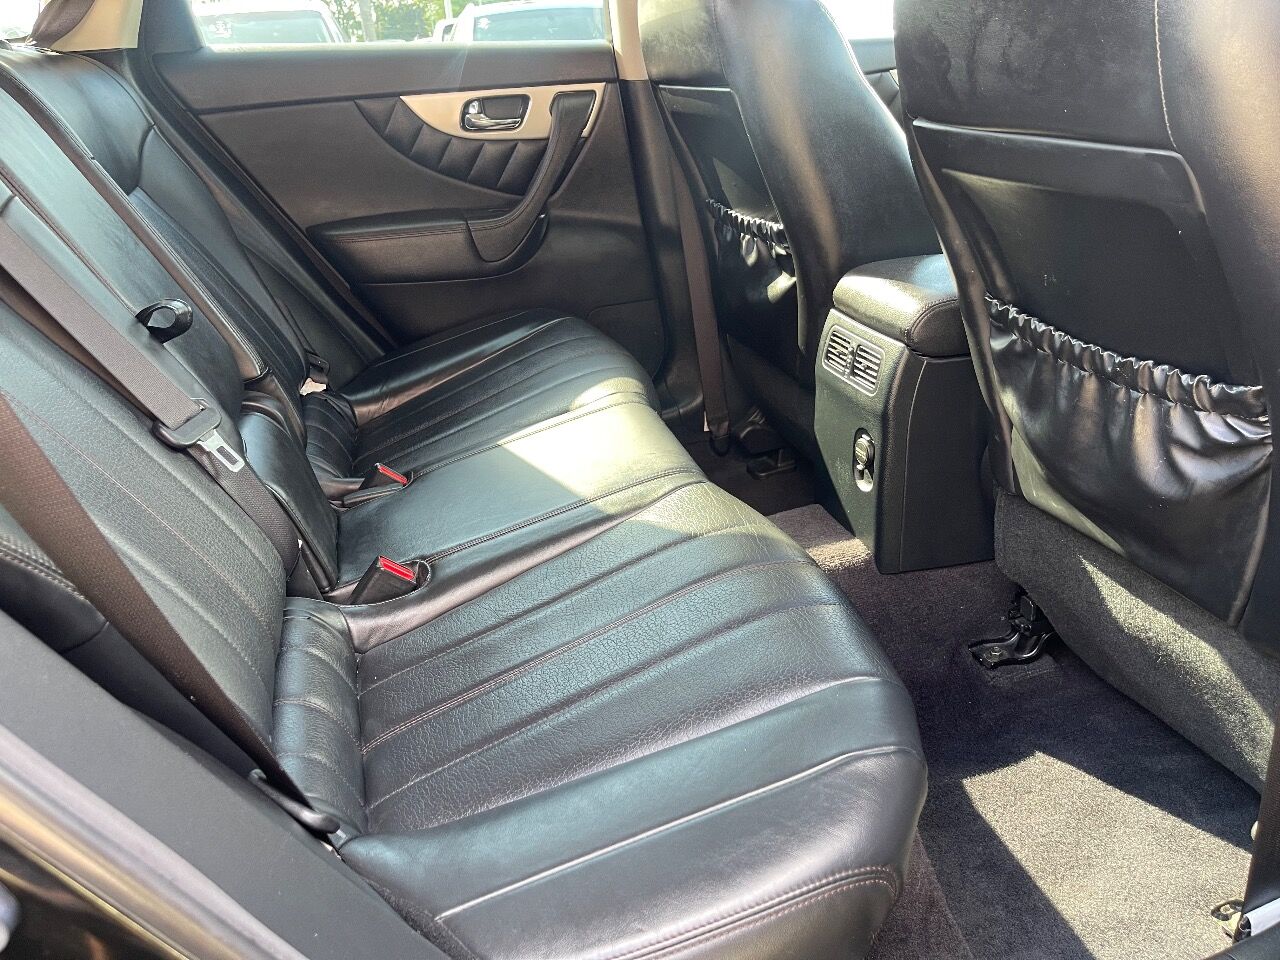 2017 Infiniti QX70 SUV - $18,900